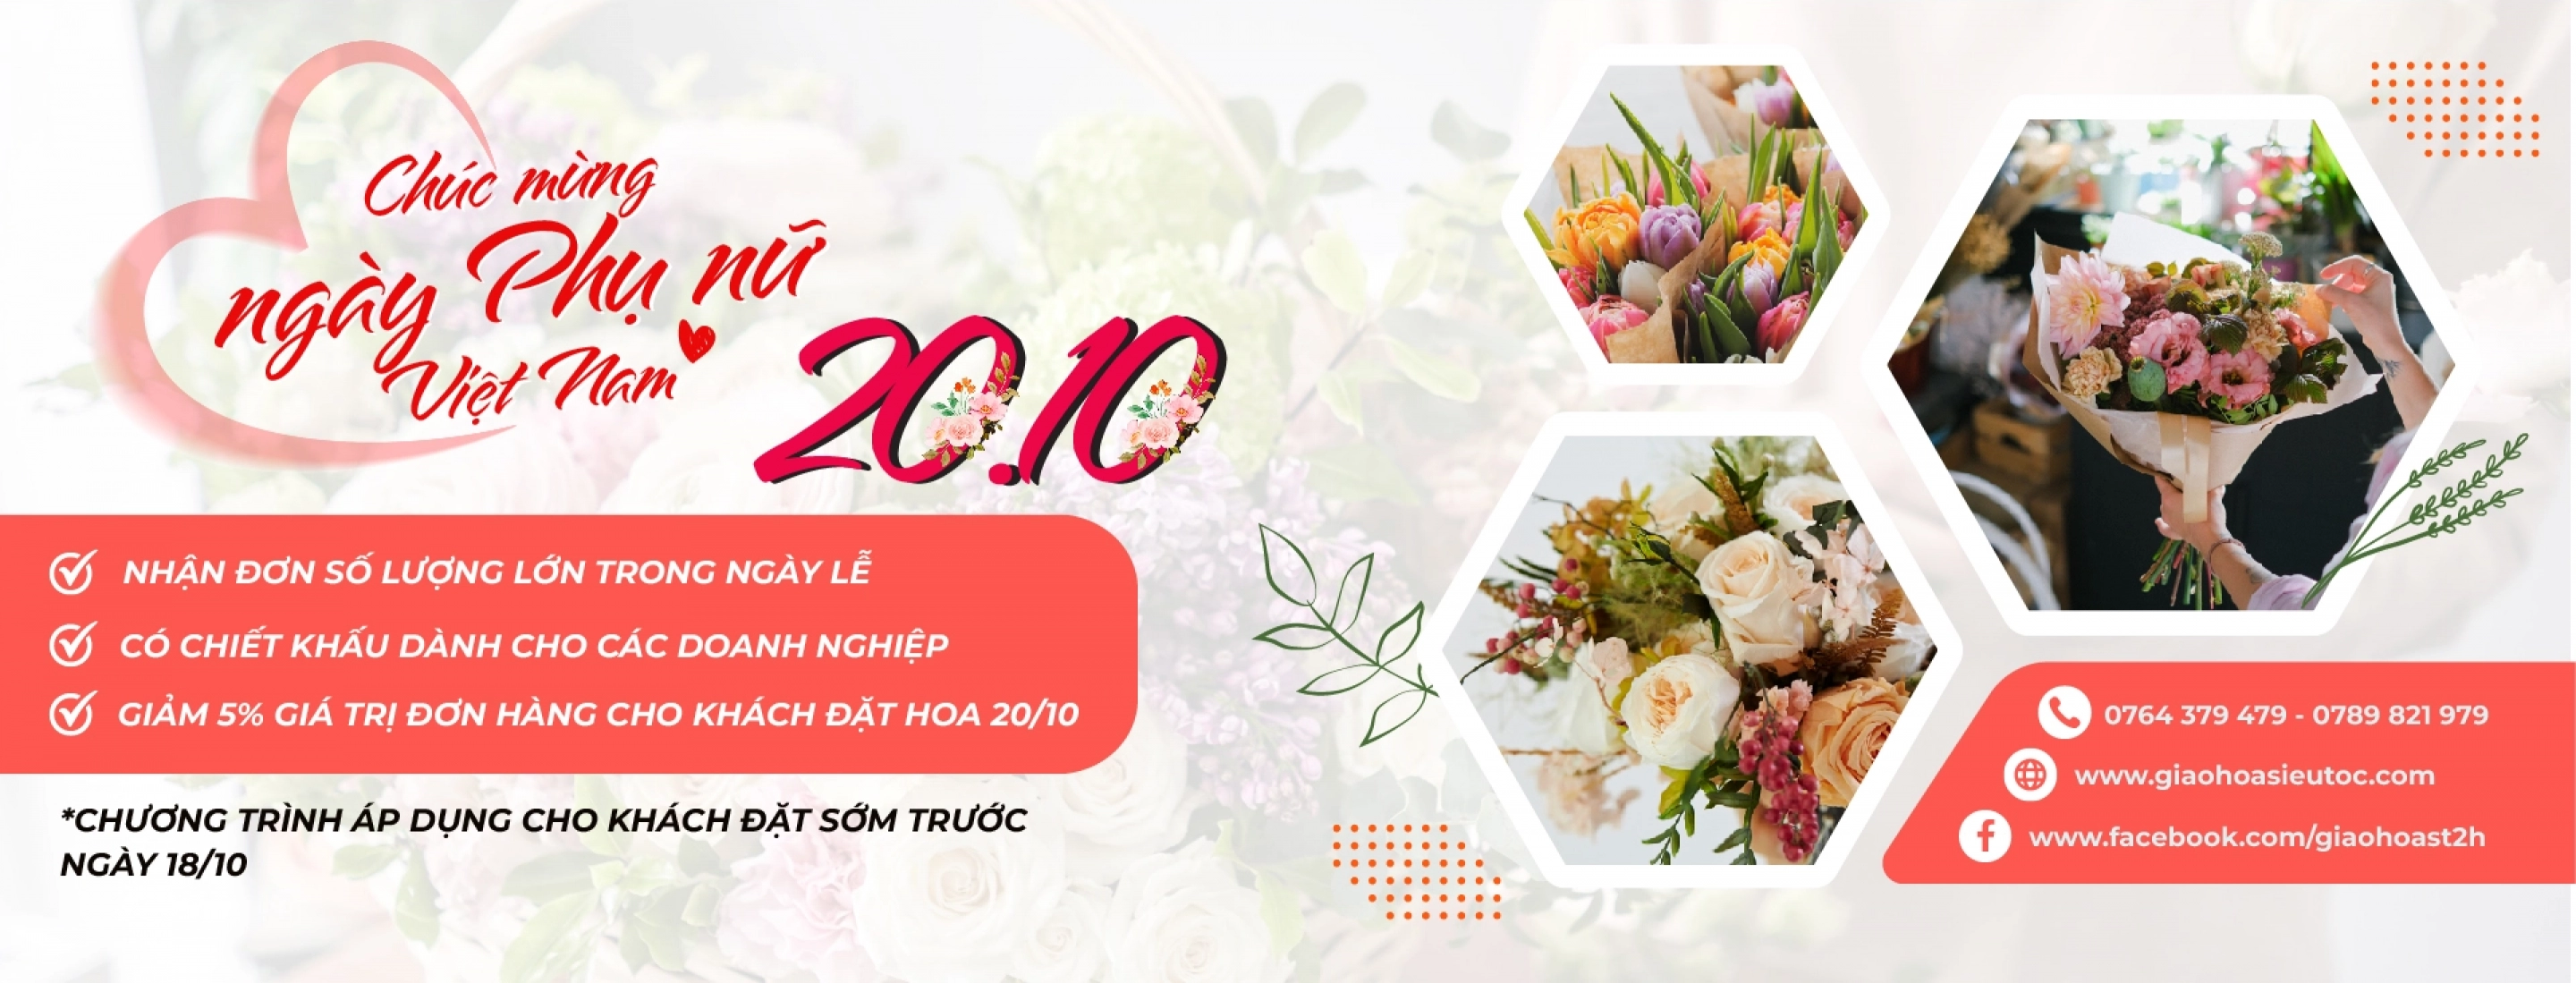 Giao hoa siêu tốc tri ân ngày Phụ nữ Việt Nam